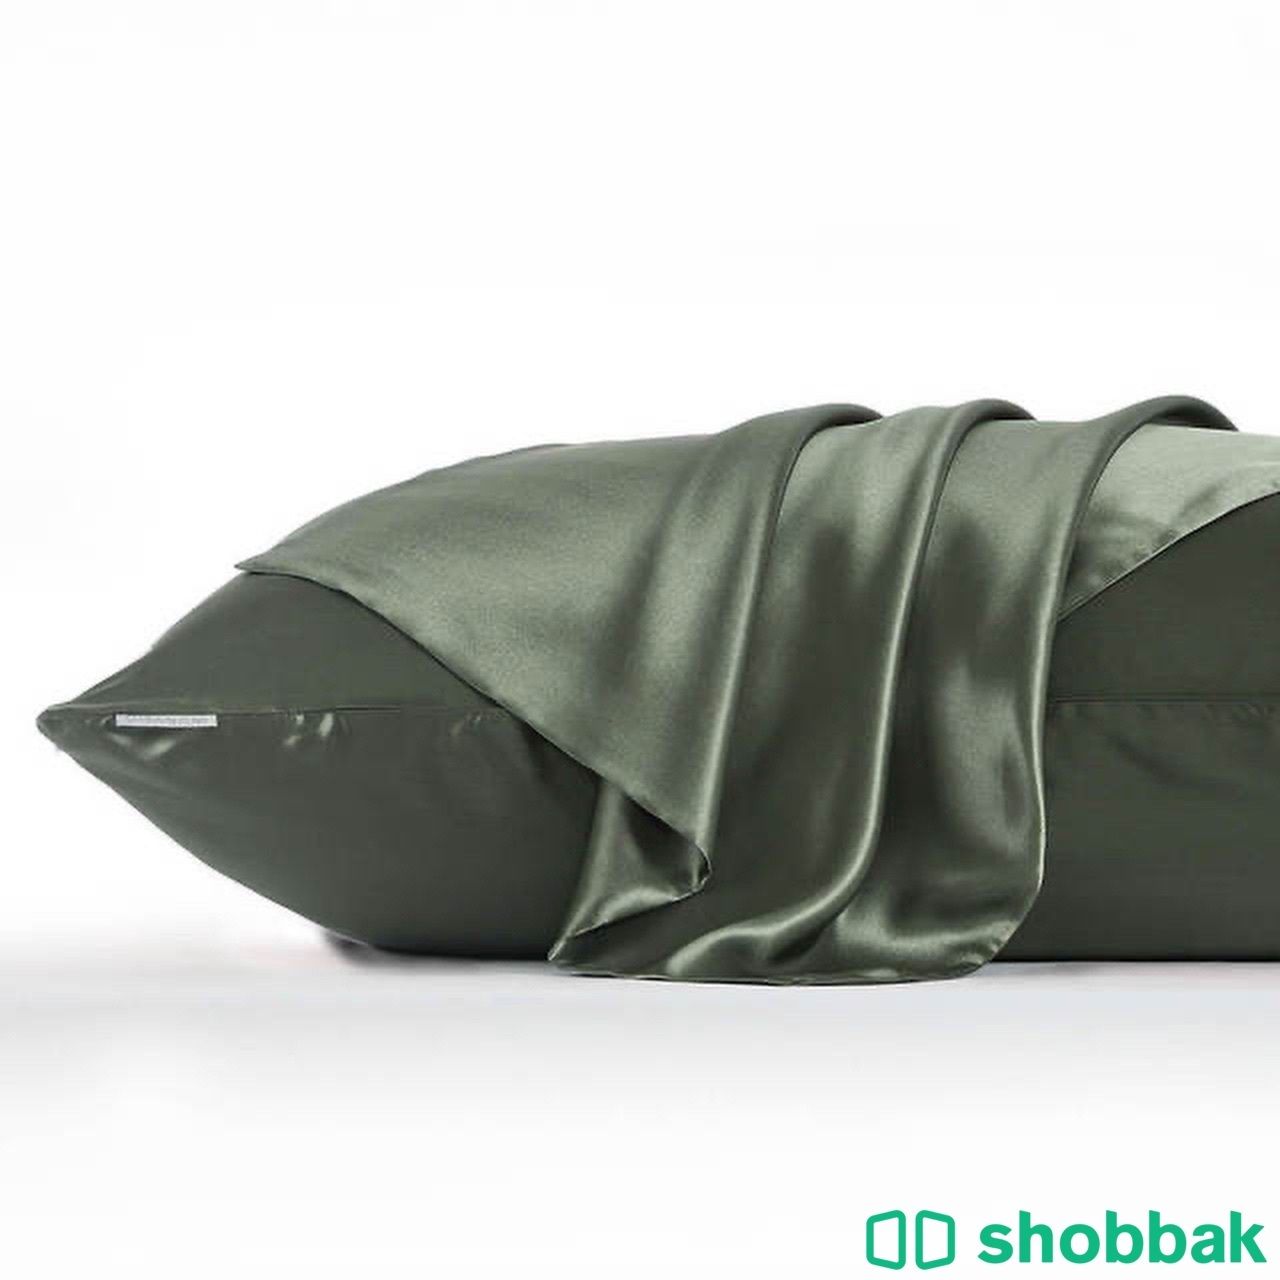 منتجات الحرير طبيعي 100٪؜ Shobbak Saudi Arabia